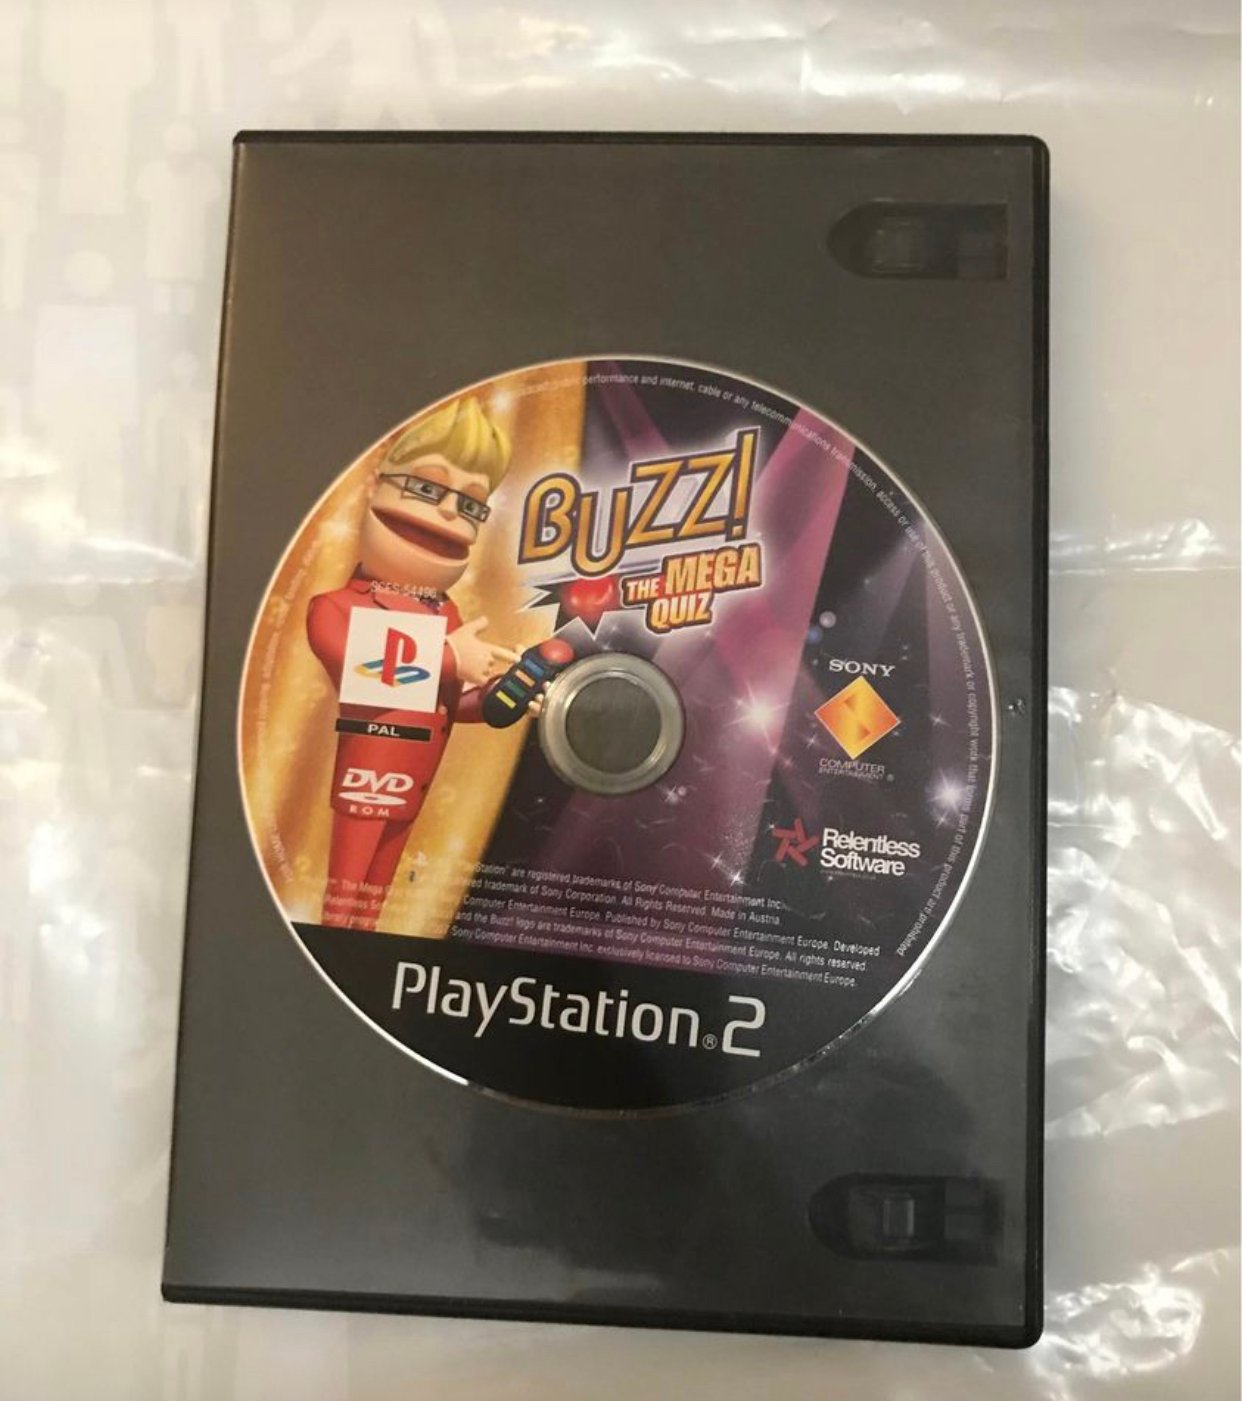 Buzz the mega quiz PS2 game